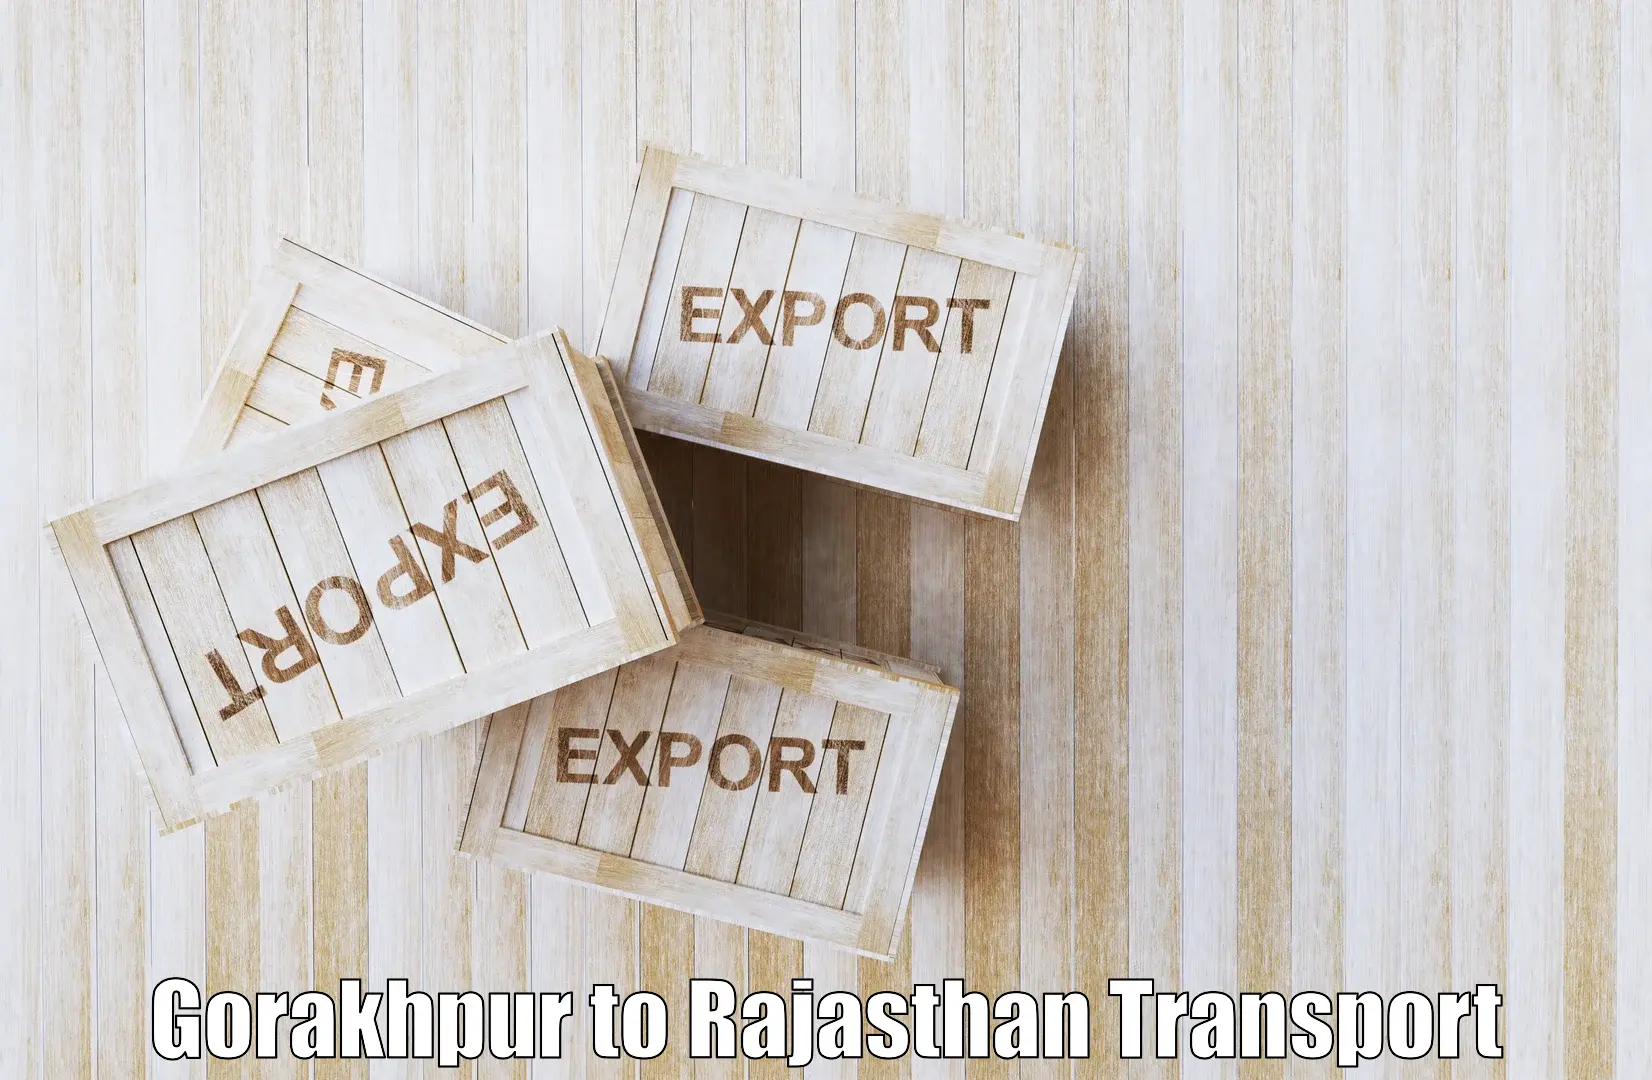 Shipping partner Gorakhpur to Hindaun